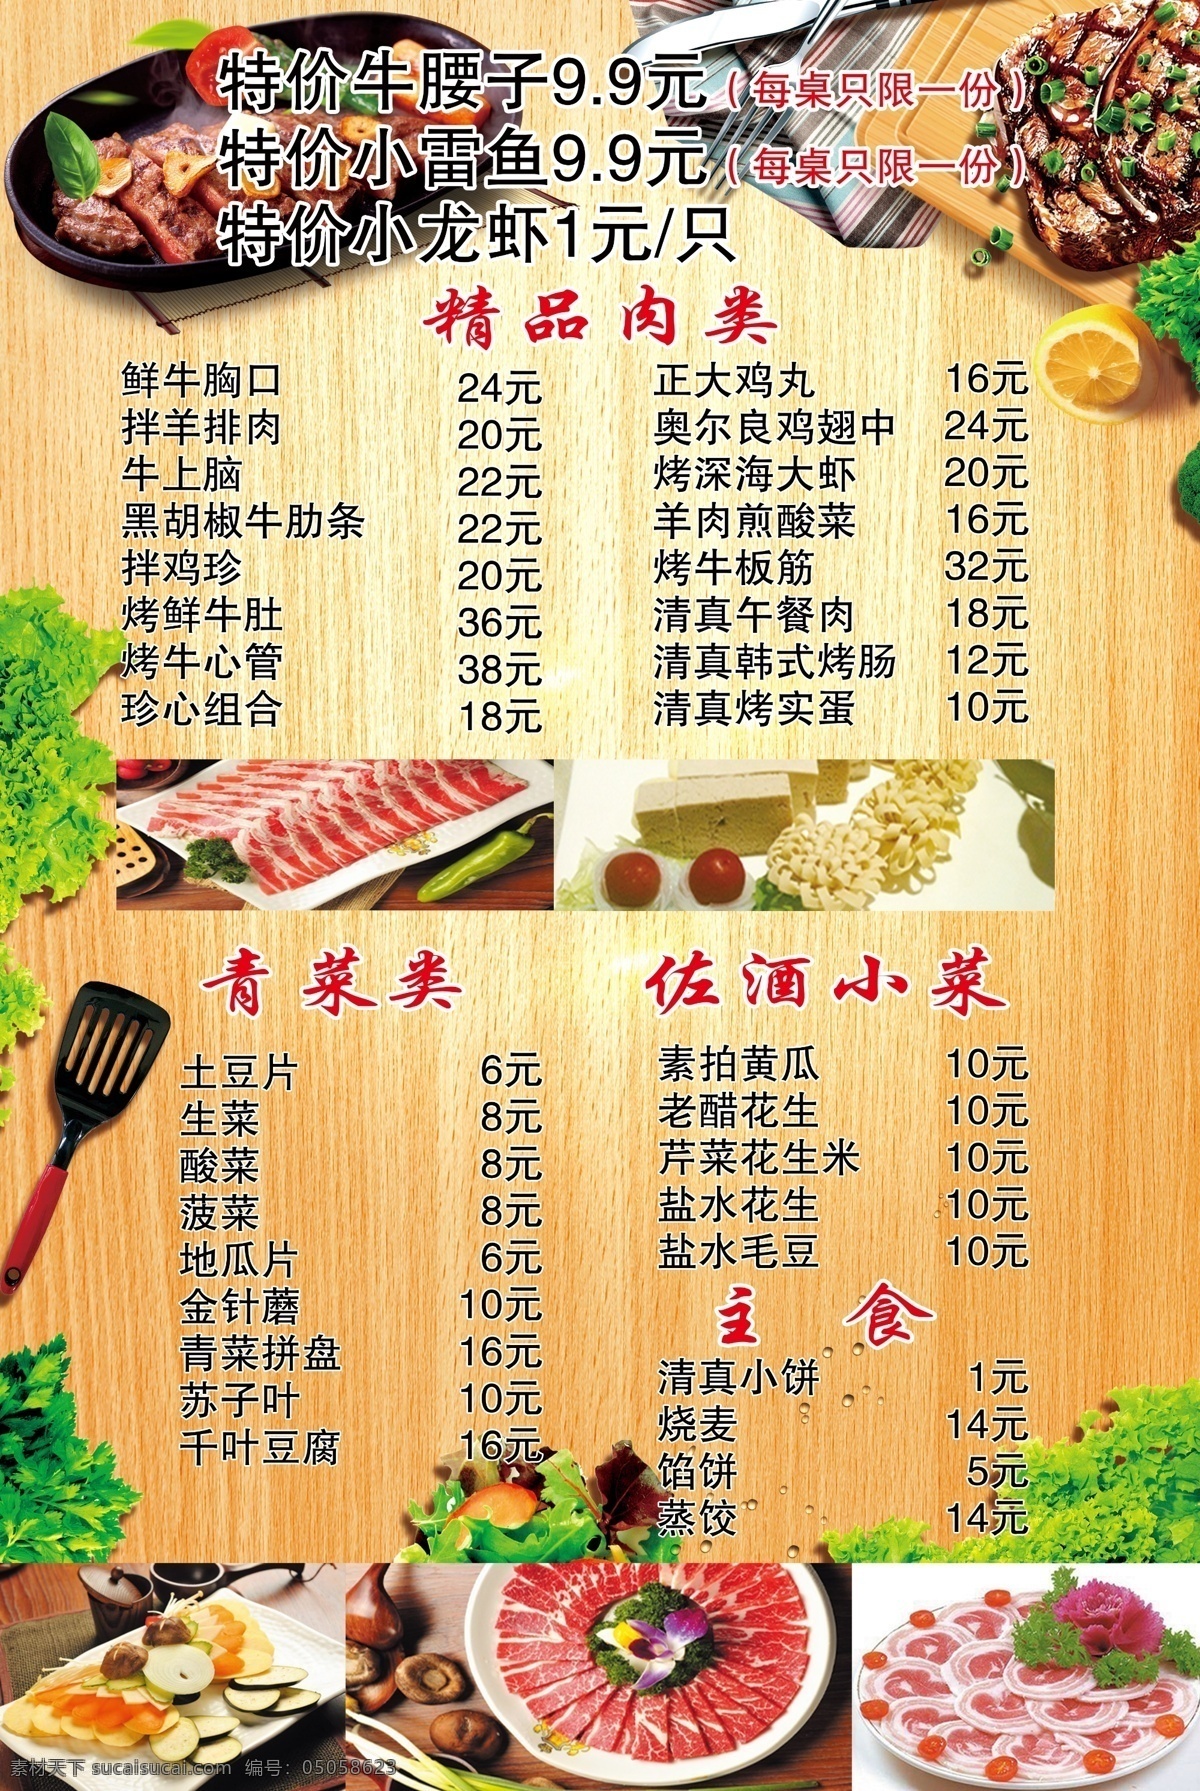 烤肉菜单图片 烤肉 菜单 绿色 羊肉 肥牛 餐饮 菜单菜谱